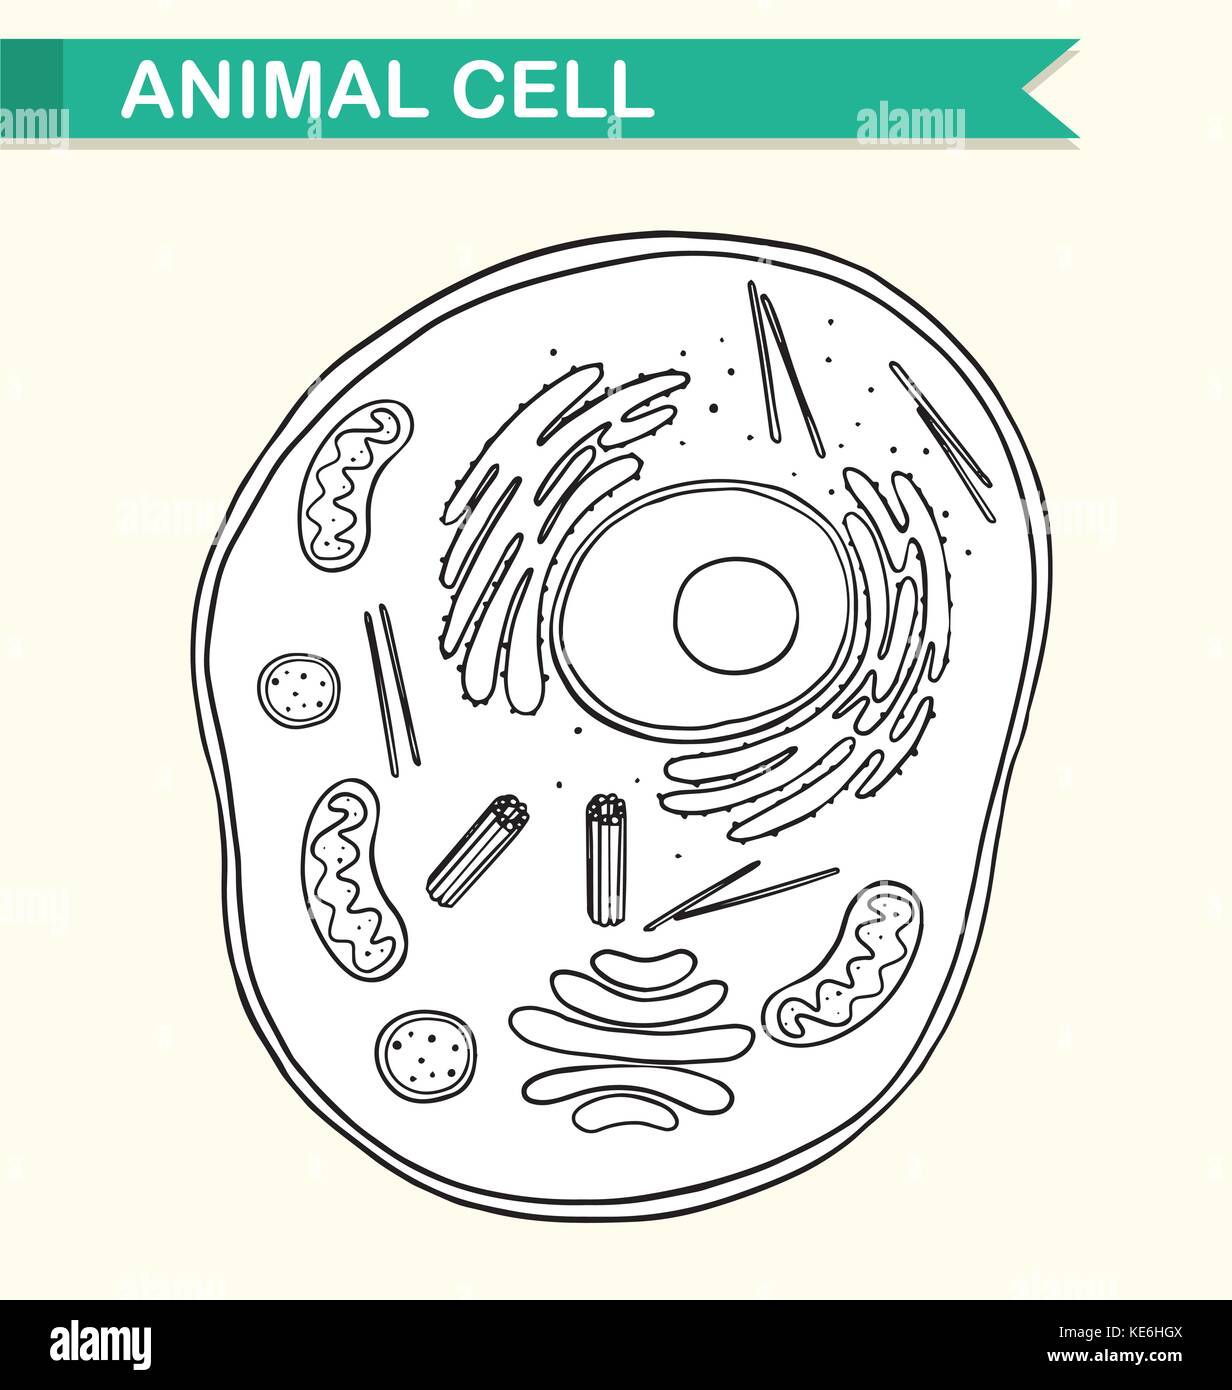 Schema Di Cellula Animale Illustrazione Immagine E Vettoriale Alamy